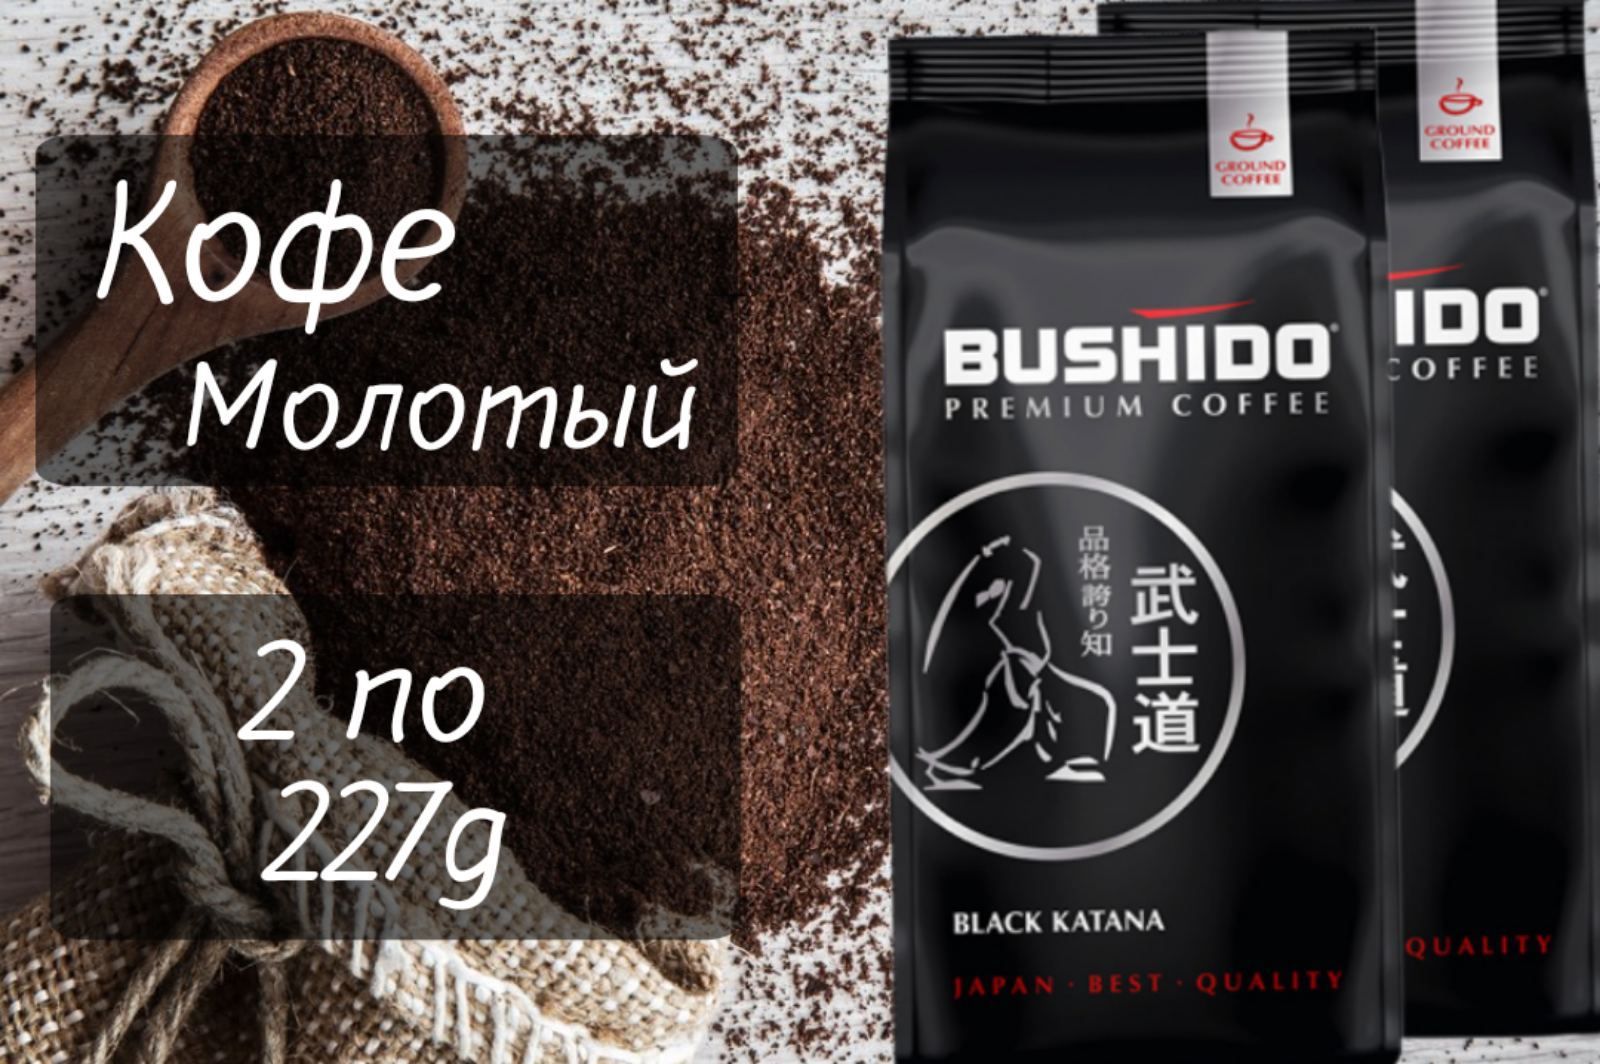 Кофе bushido black. Bushido / Black Katana кофе молотый, 227 г. Кофе Bushido Блэк катана. Кофе молот., Bushido Red Katana, 227г. Кофе Бушидо Блэк молот 227г.